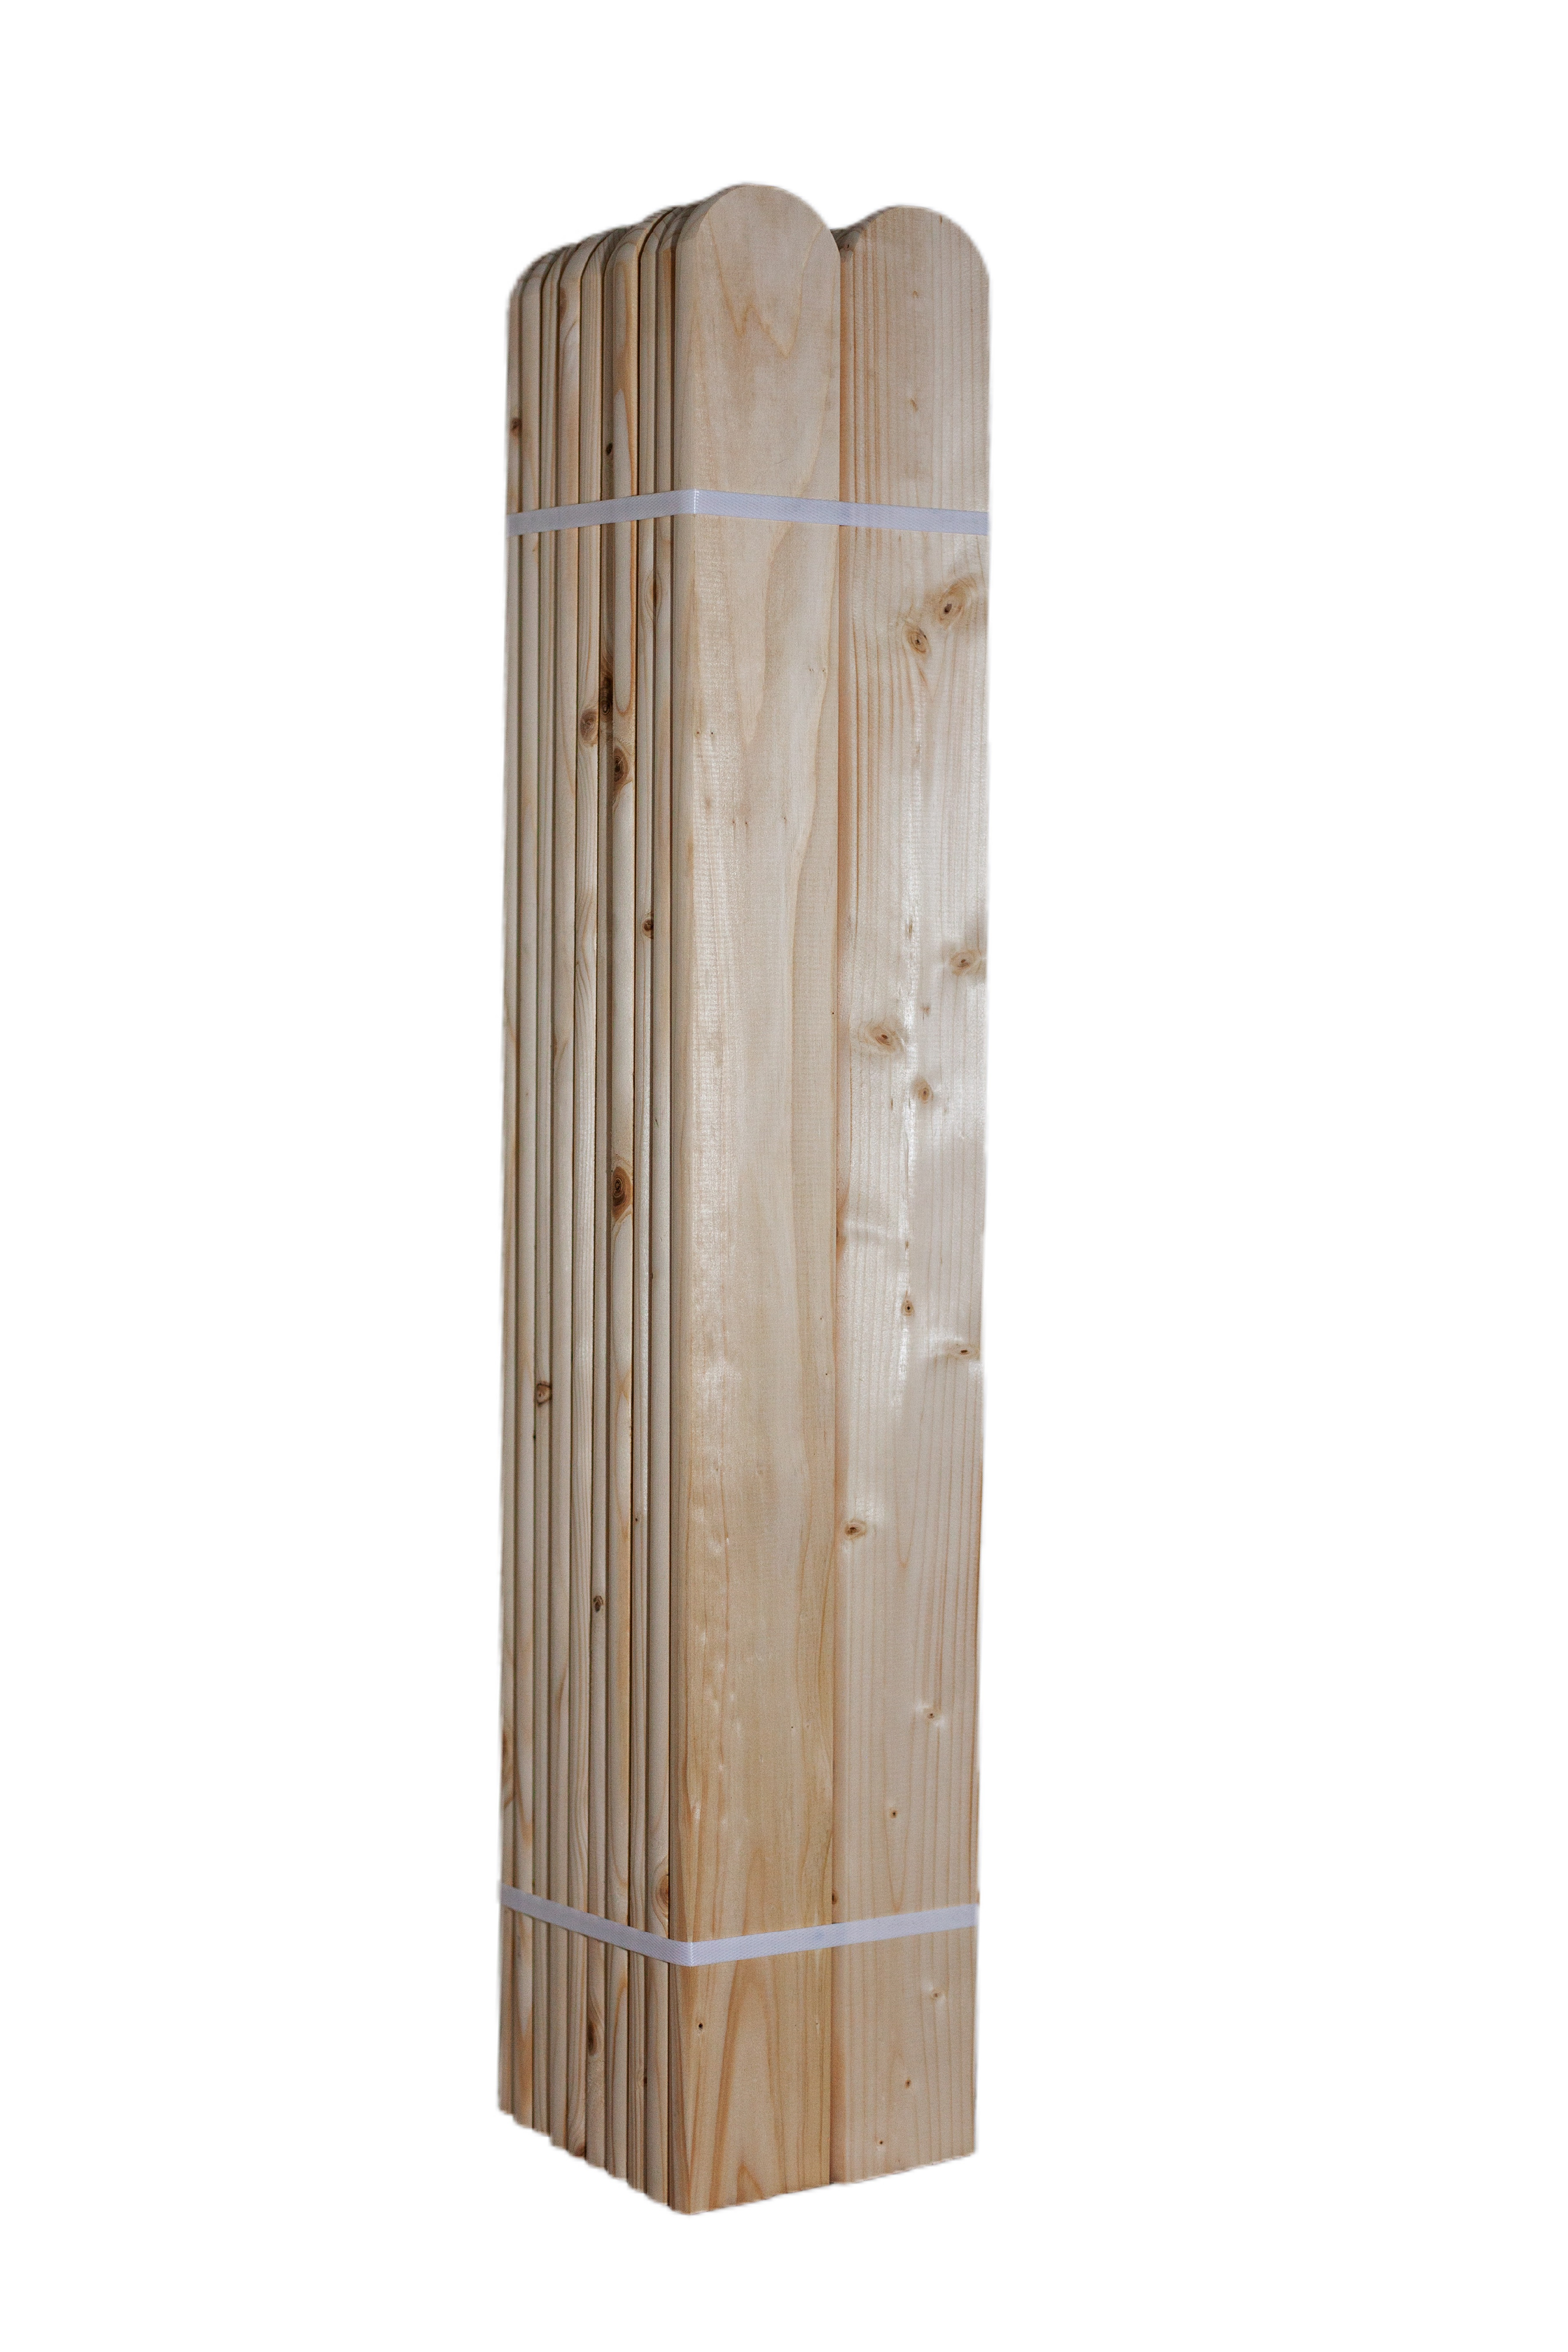 LC Dřevěná smrková plotovka, 20 x 90 mm zakulacená 1ks Výška plotovek: 110 cm